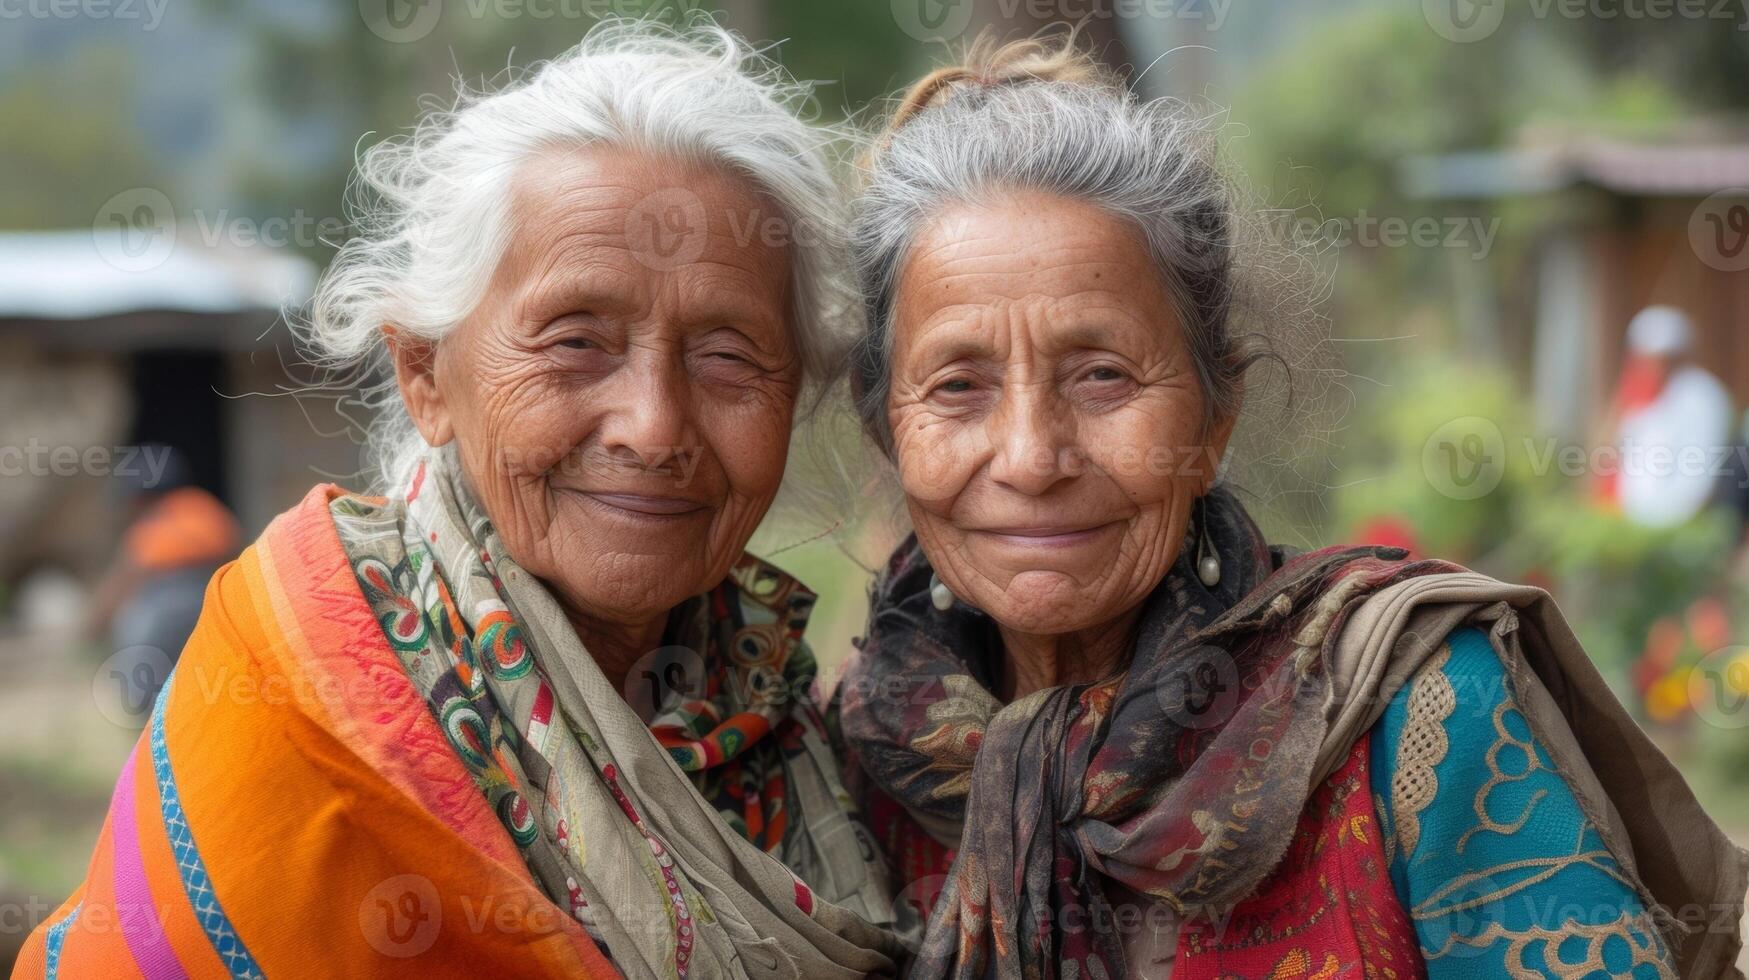 âge est juste une nombre lorsque il vient à prêt une portion main comme ces retraités prouver sur leur inspirant bénévole Voyage mission dans une développement pays photo